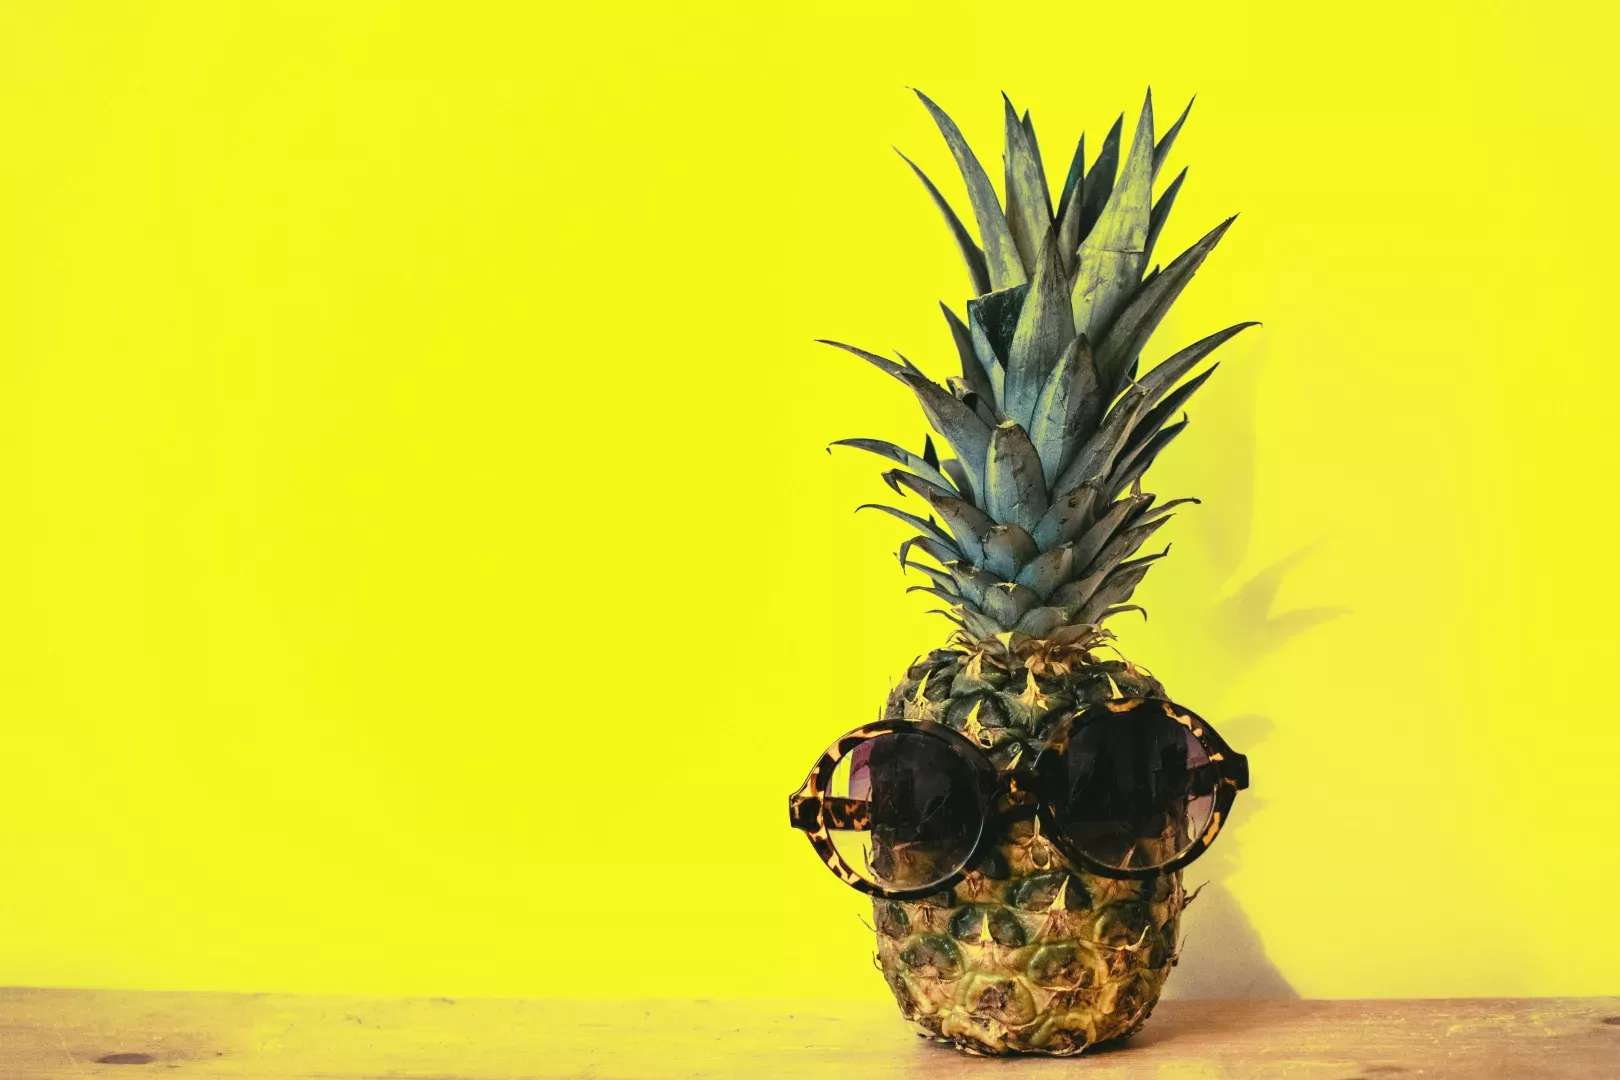 Ananas : ce fruit tropical regorge de bienfaits que vous ne soupçonnez pas !